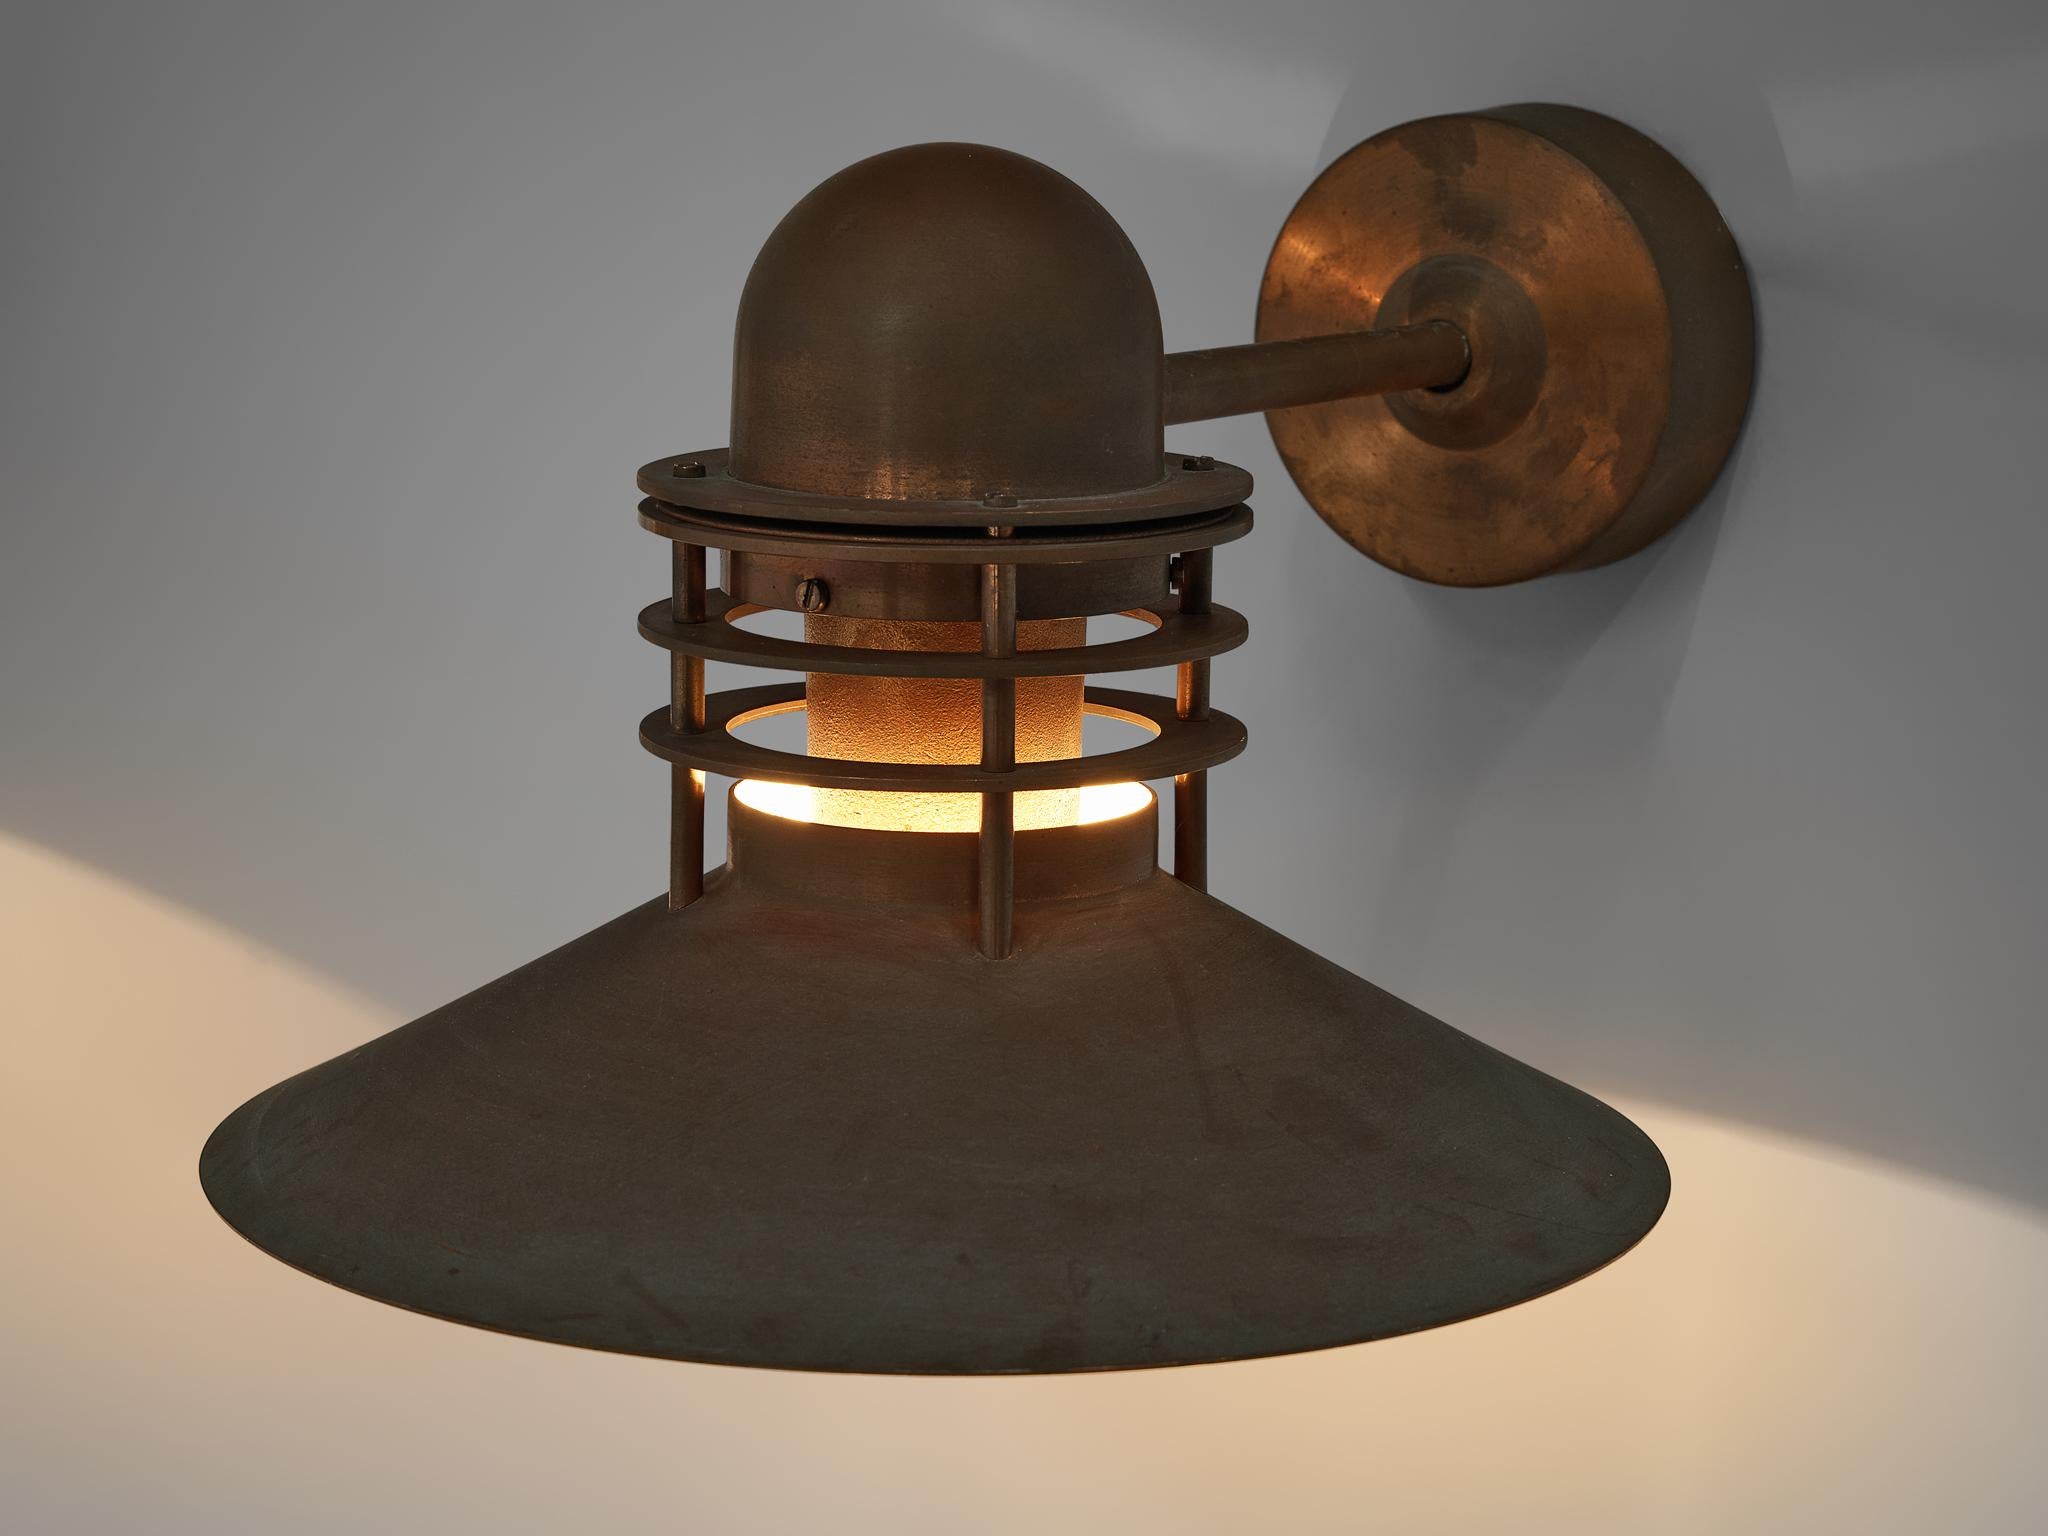 Danish Homann & Kjær for Louis Poulson Wall Lamps ‘Nyhavn’ in Copper